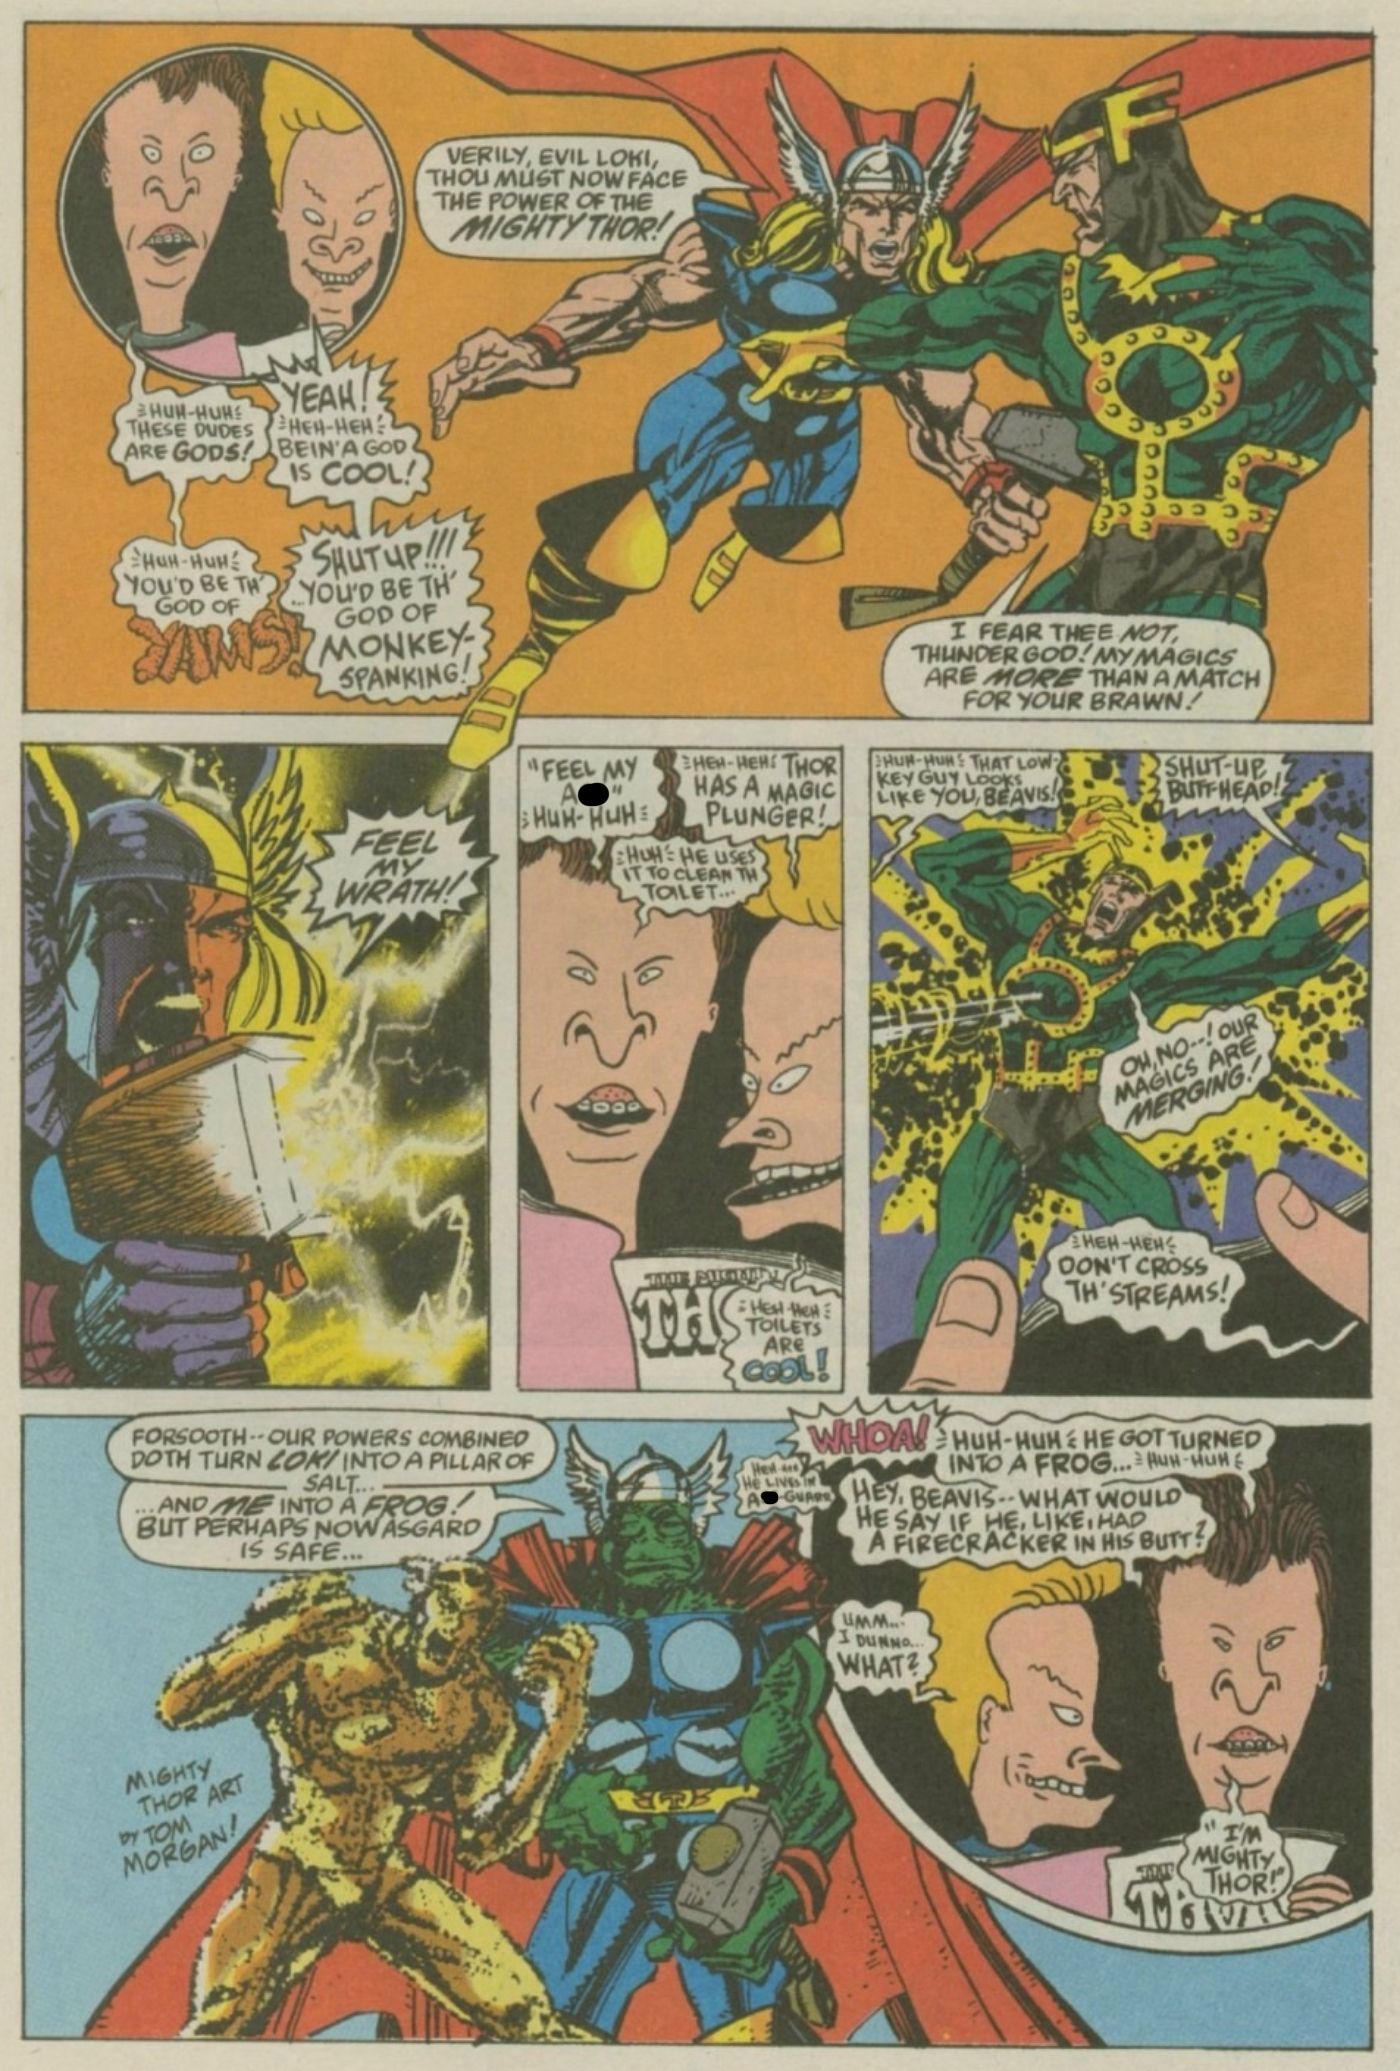 Beavis e Butt-Head lendo uma edição de The Mighty Thor.